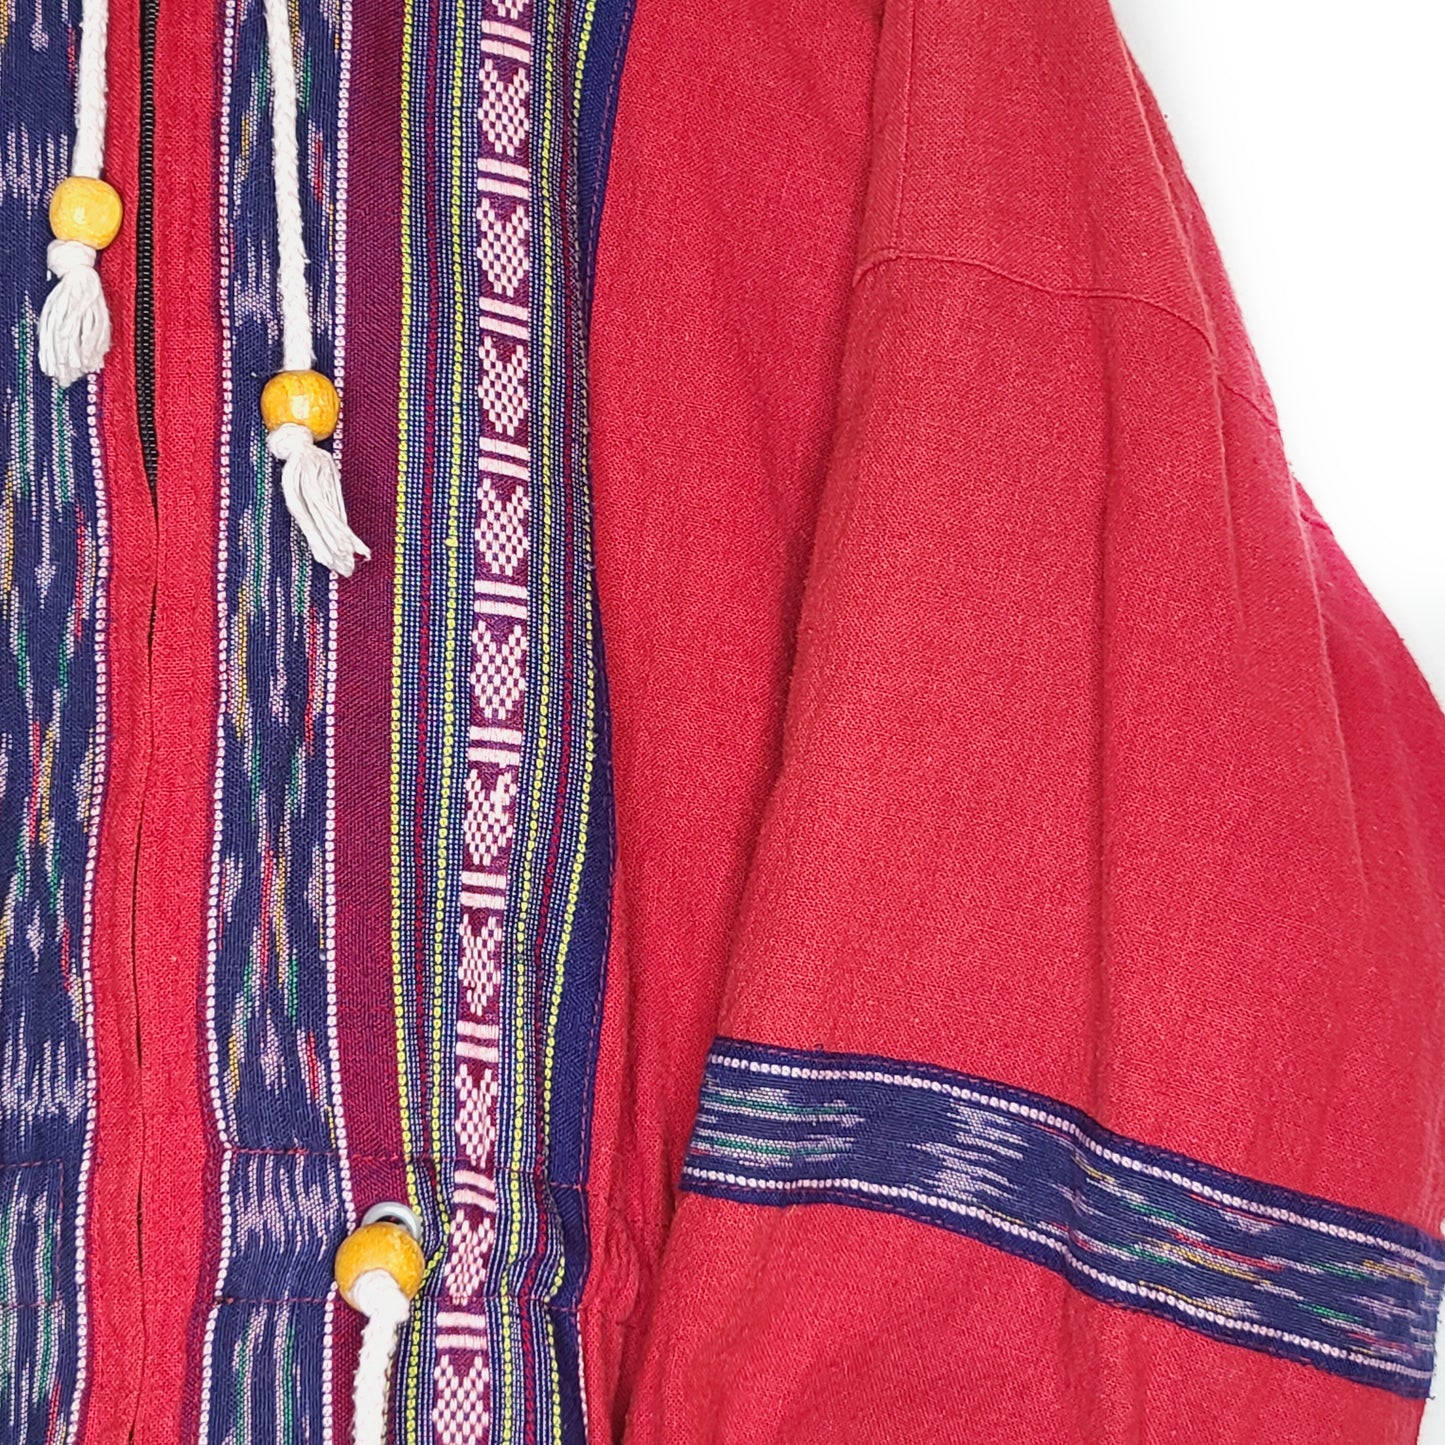 Manteau oversize boheme rouge - zimfriperie